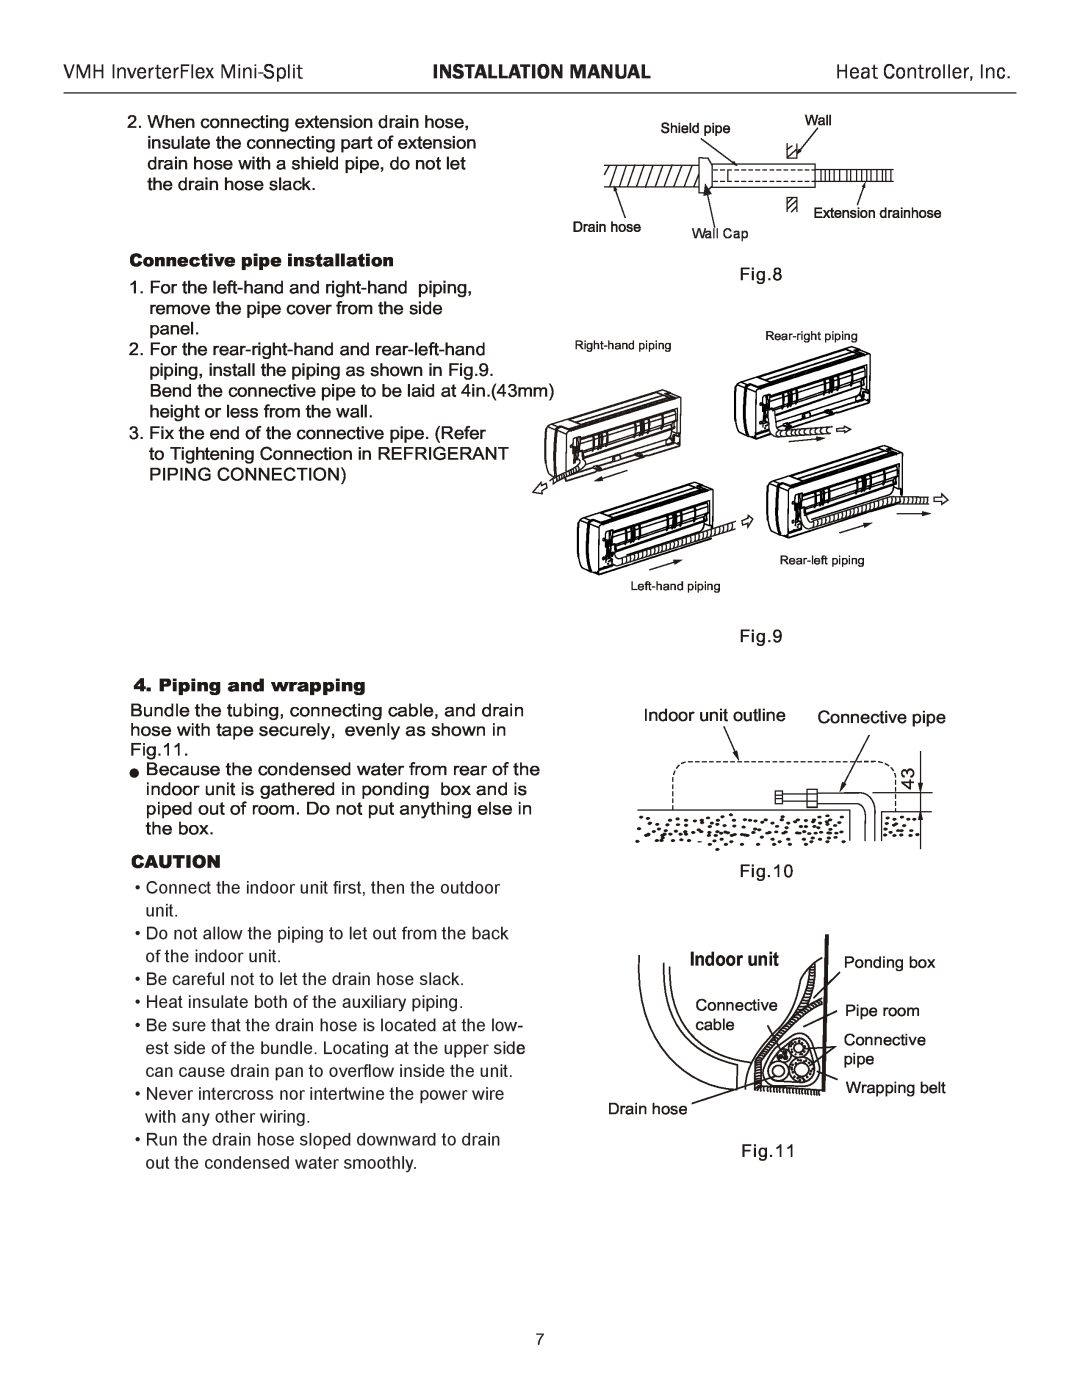 Heat Controller VMH 09, VMH 27, VMH 18 VMH InverterFlex Mini-Split, Installation Manual, Heat Controller, Inc, Indoor unit 